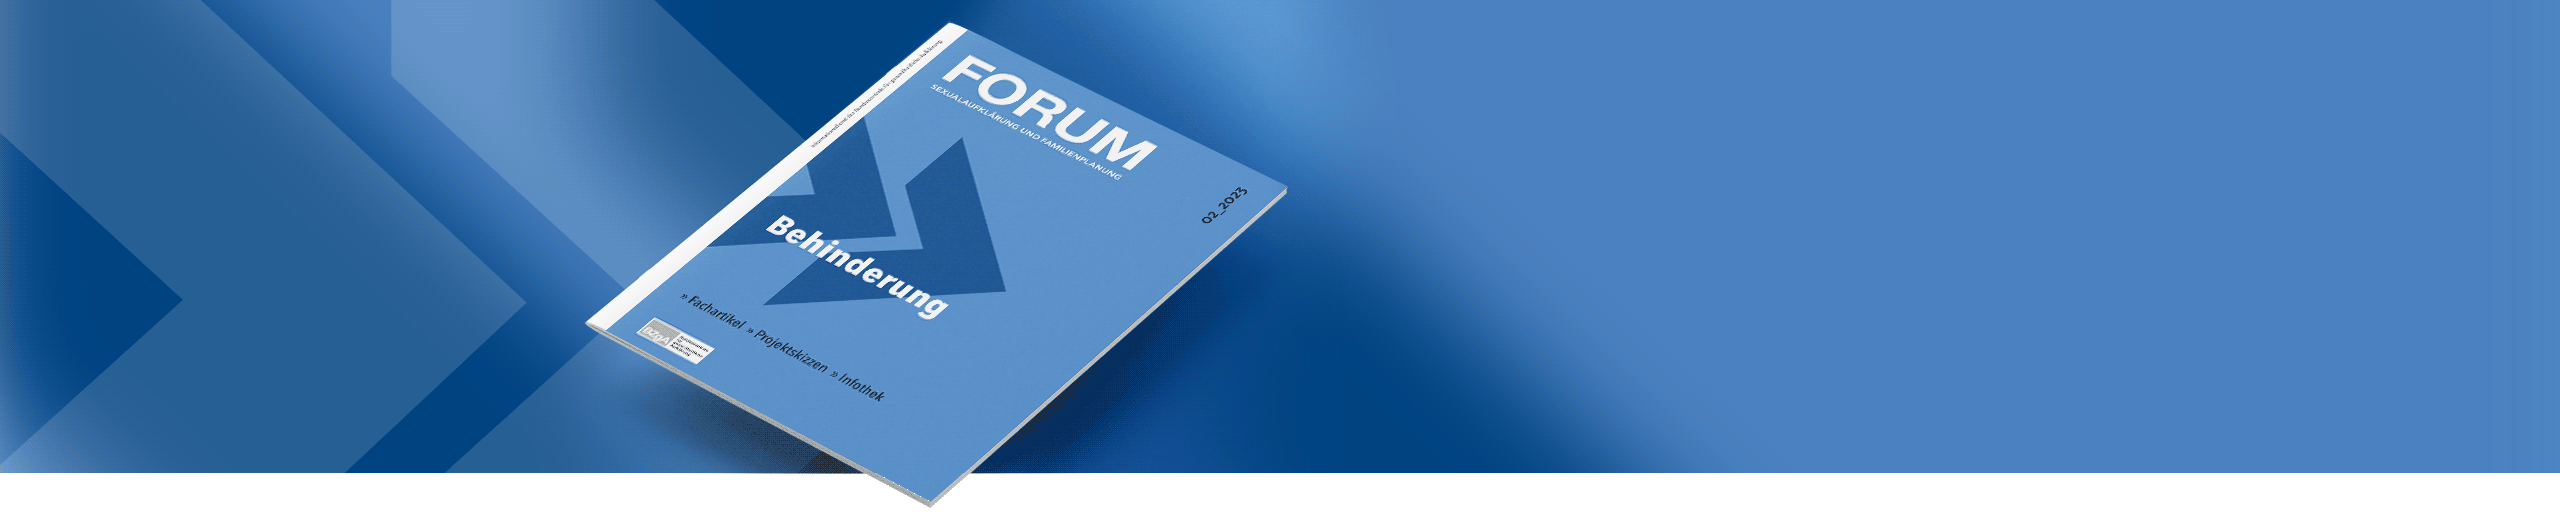 Die Broschüre FORUM 2-2023 auf blauem Hintergrund